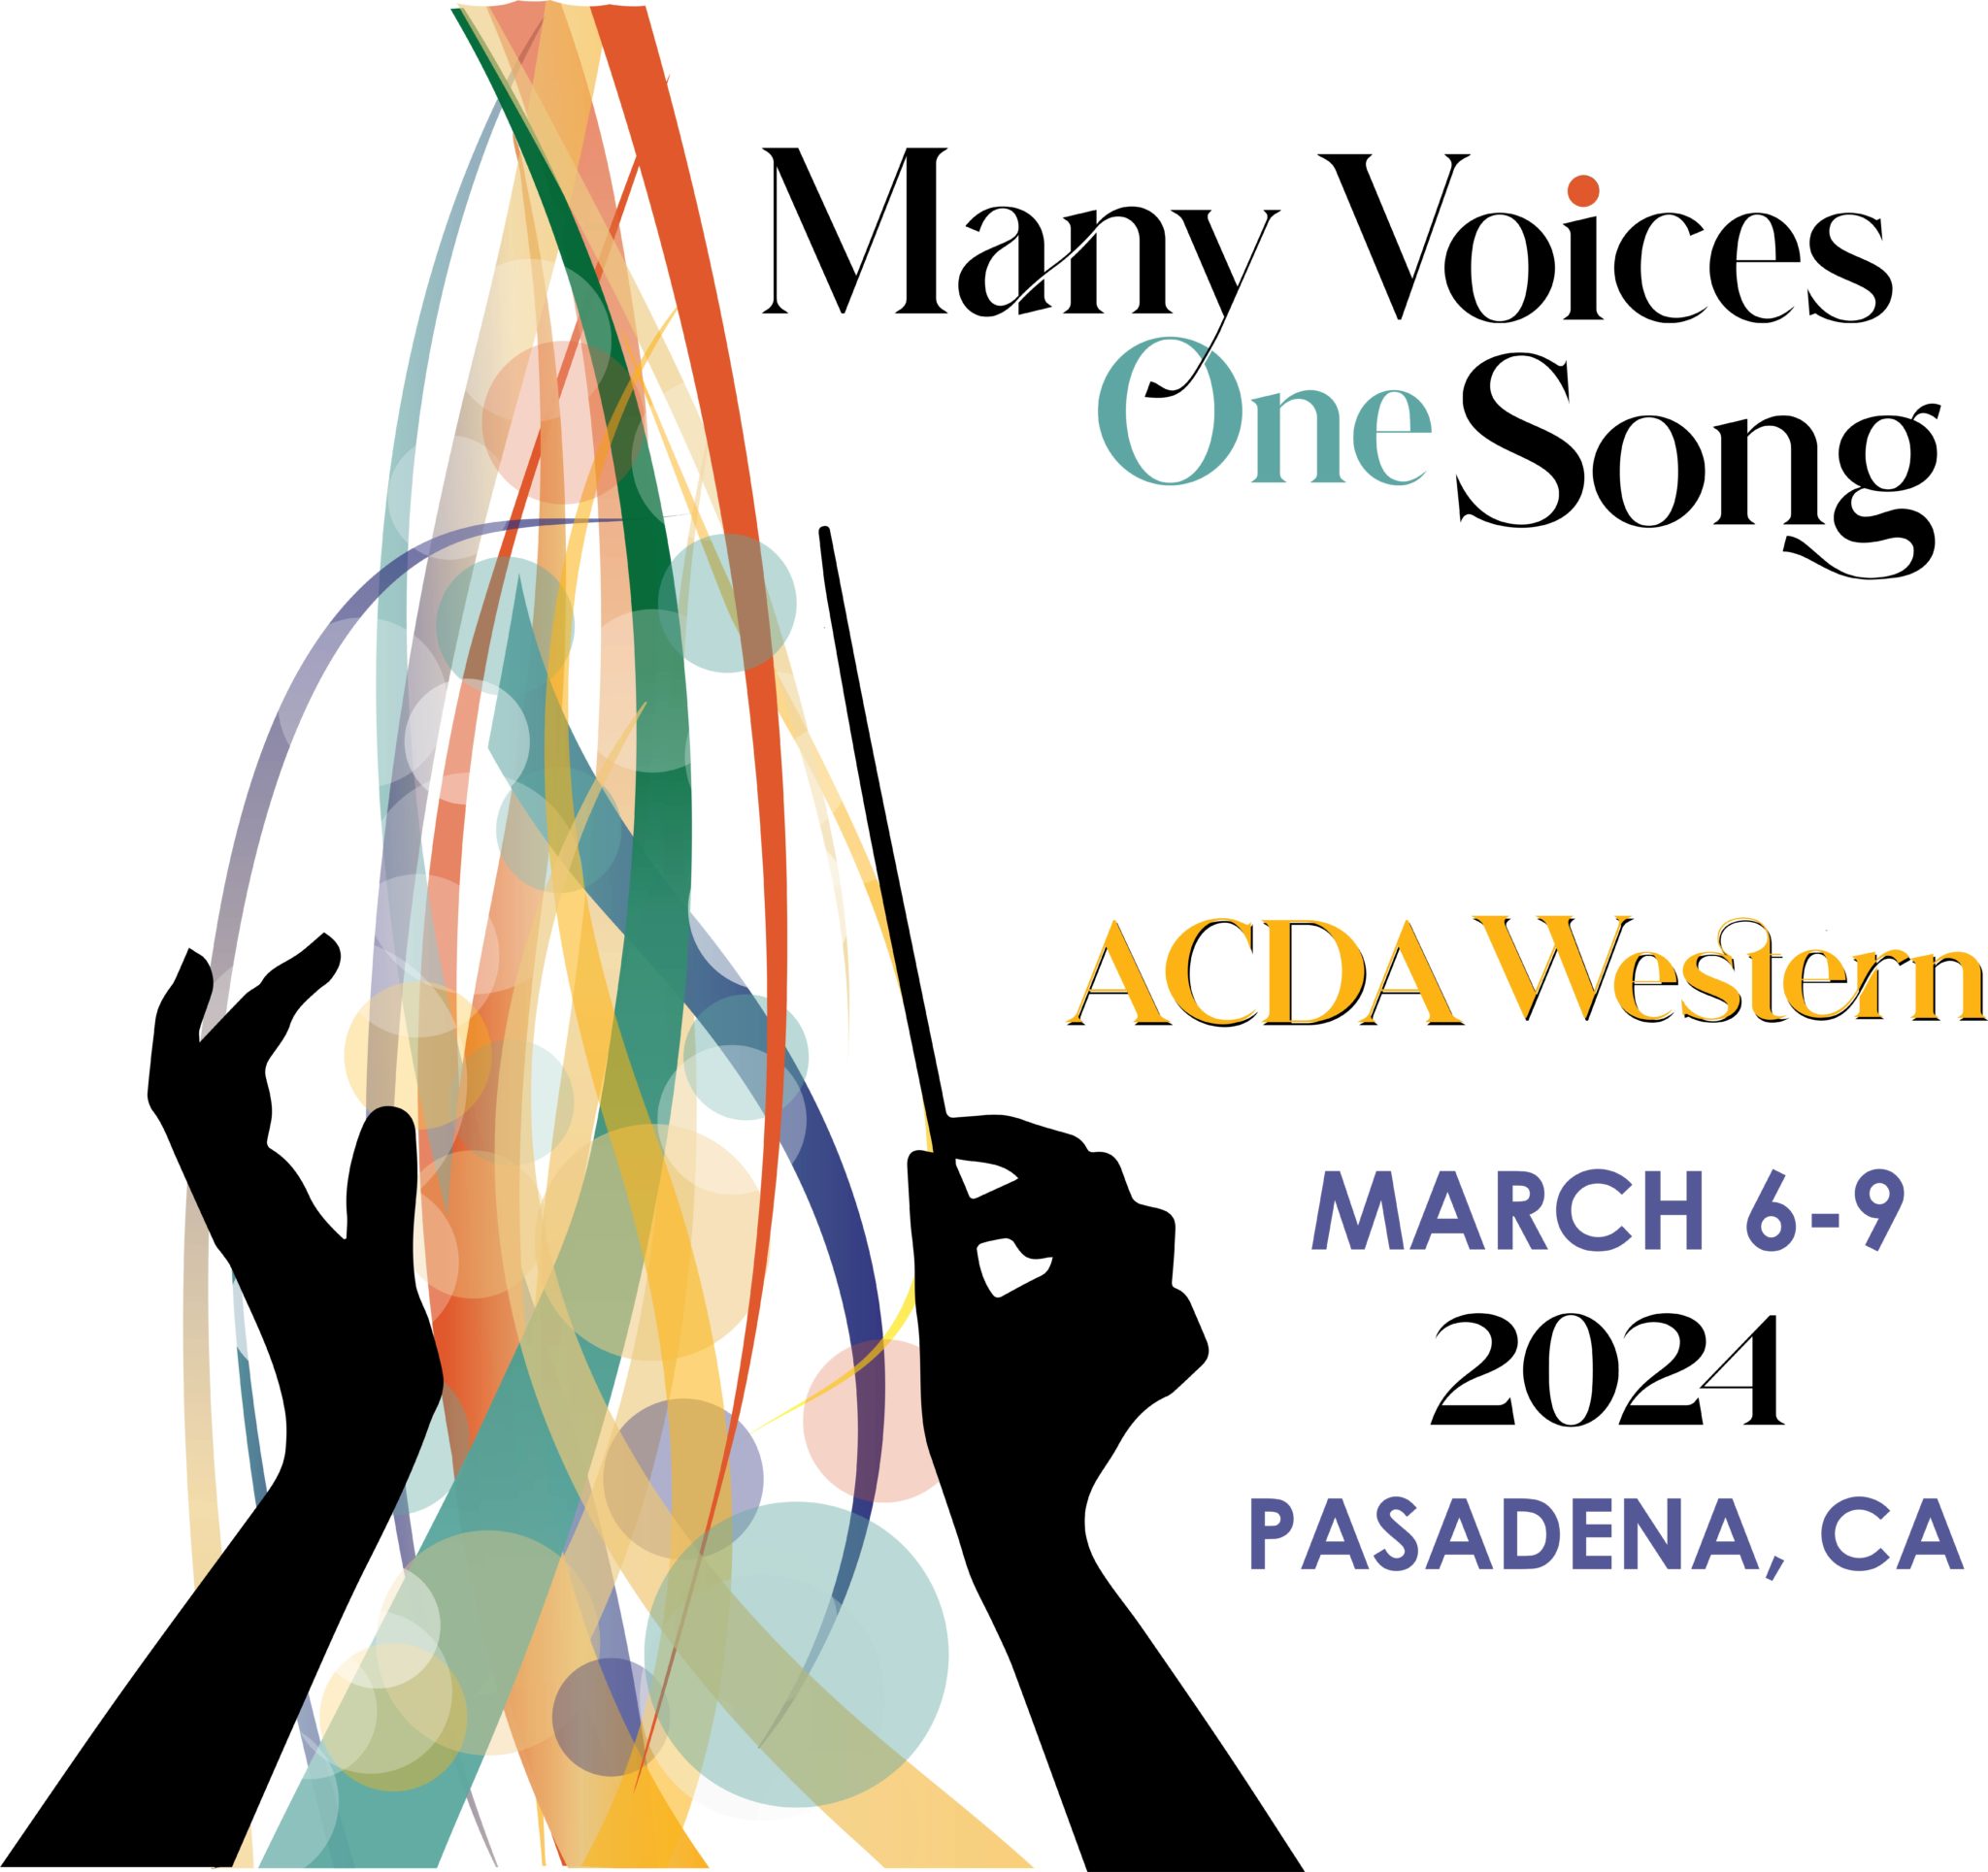 ACDA Western Region American Choral Directors Association